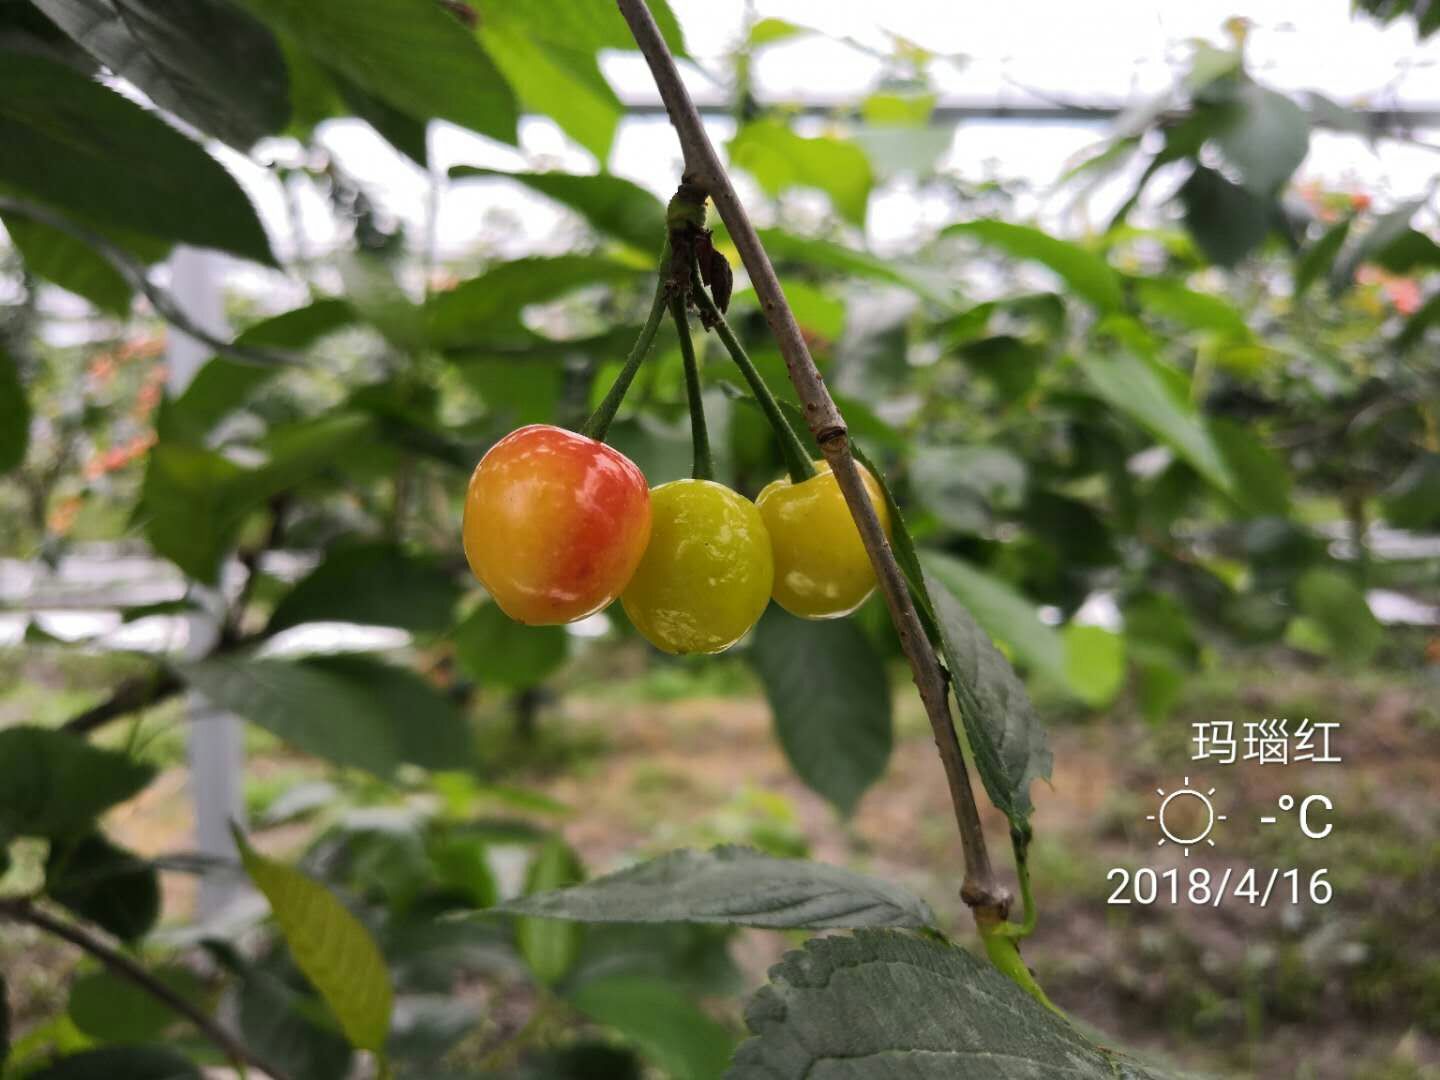 玛瑙红樱桃种植、价格、批发、报价【兴化市猕梦园花木种植场】图片